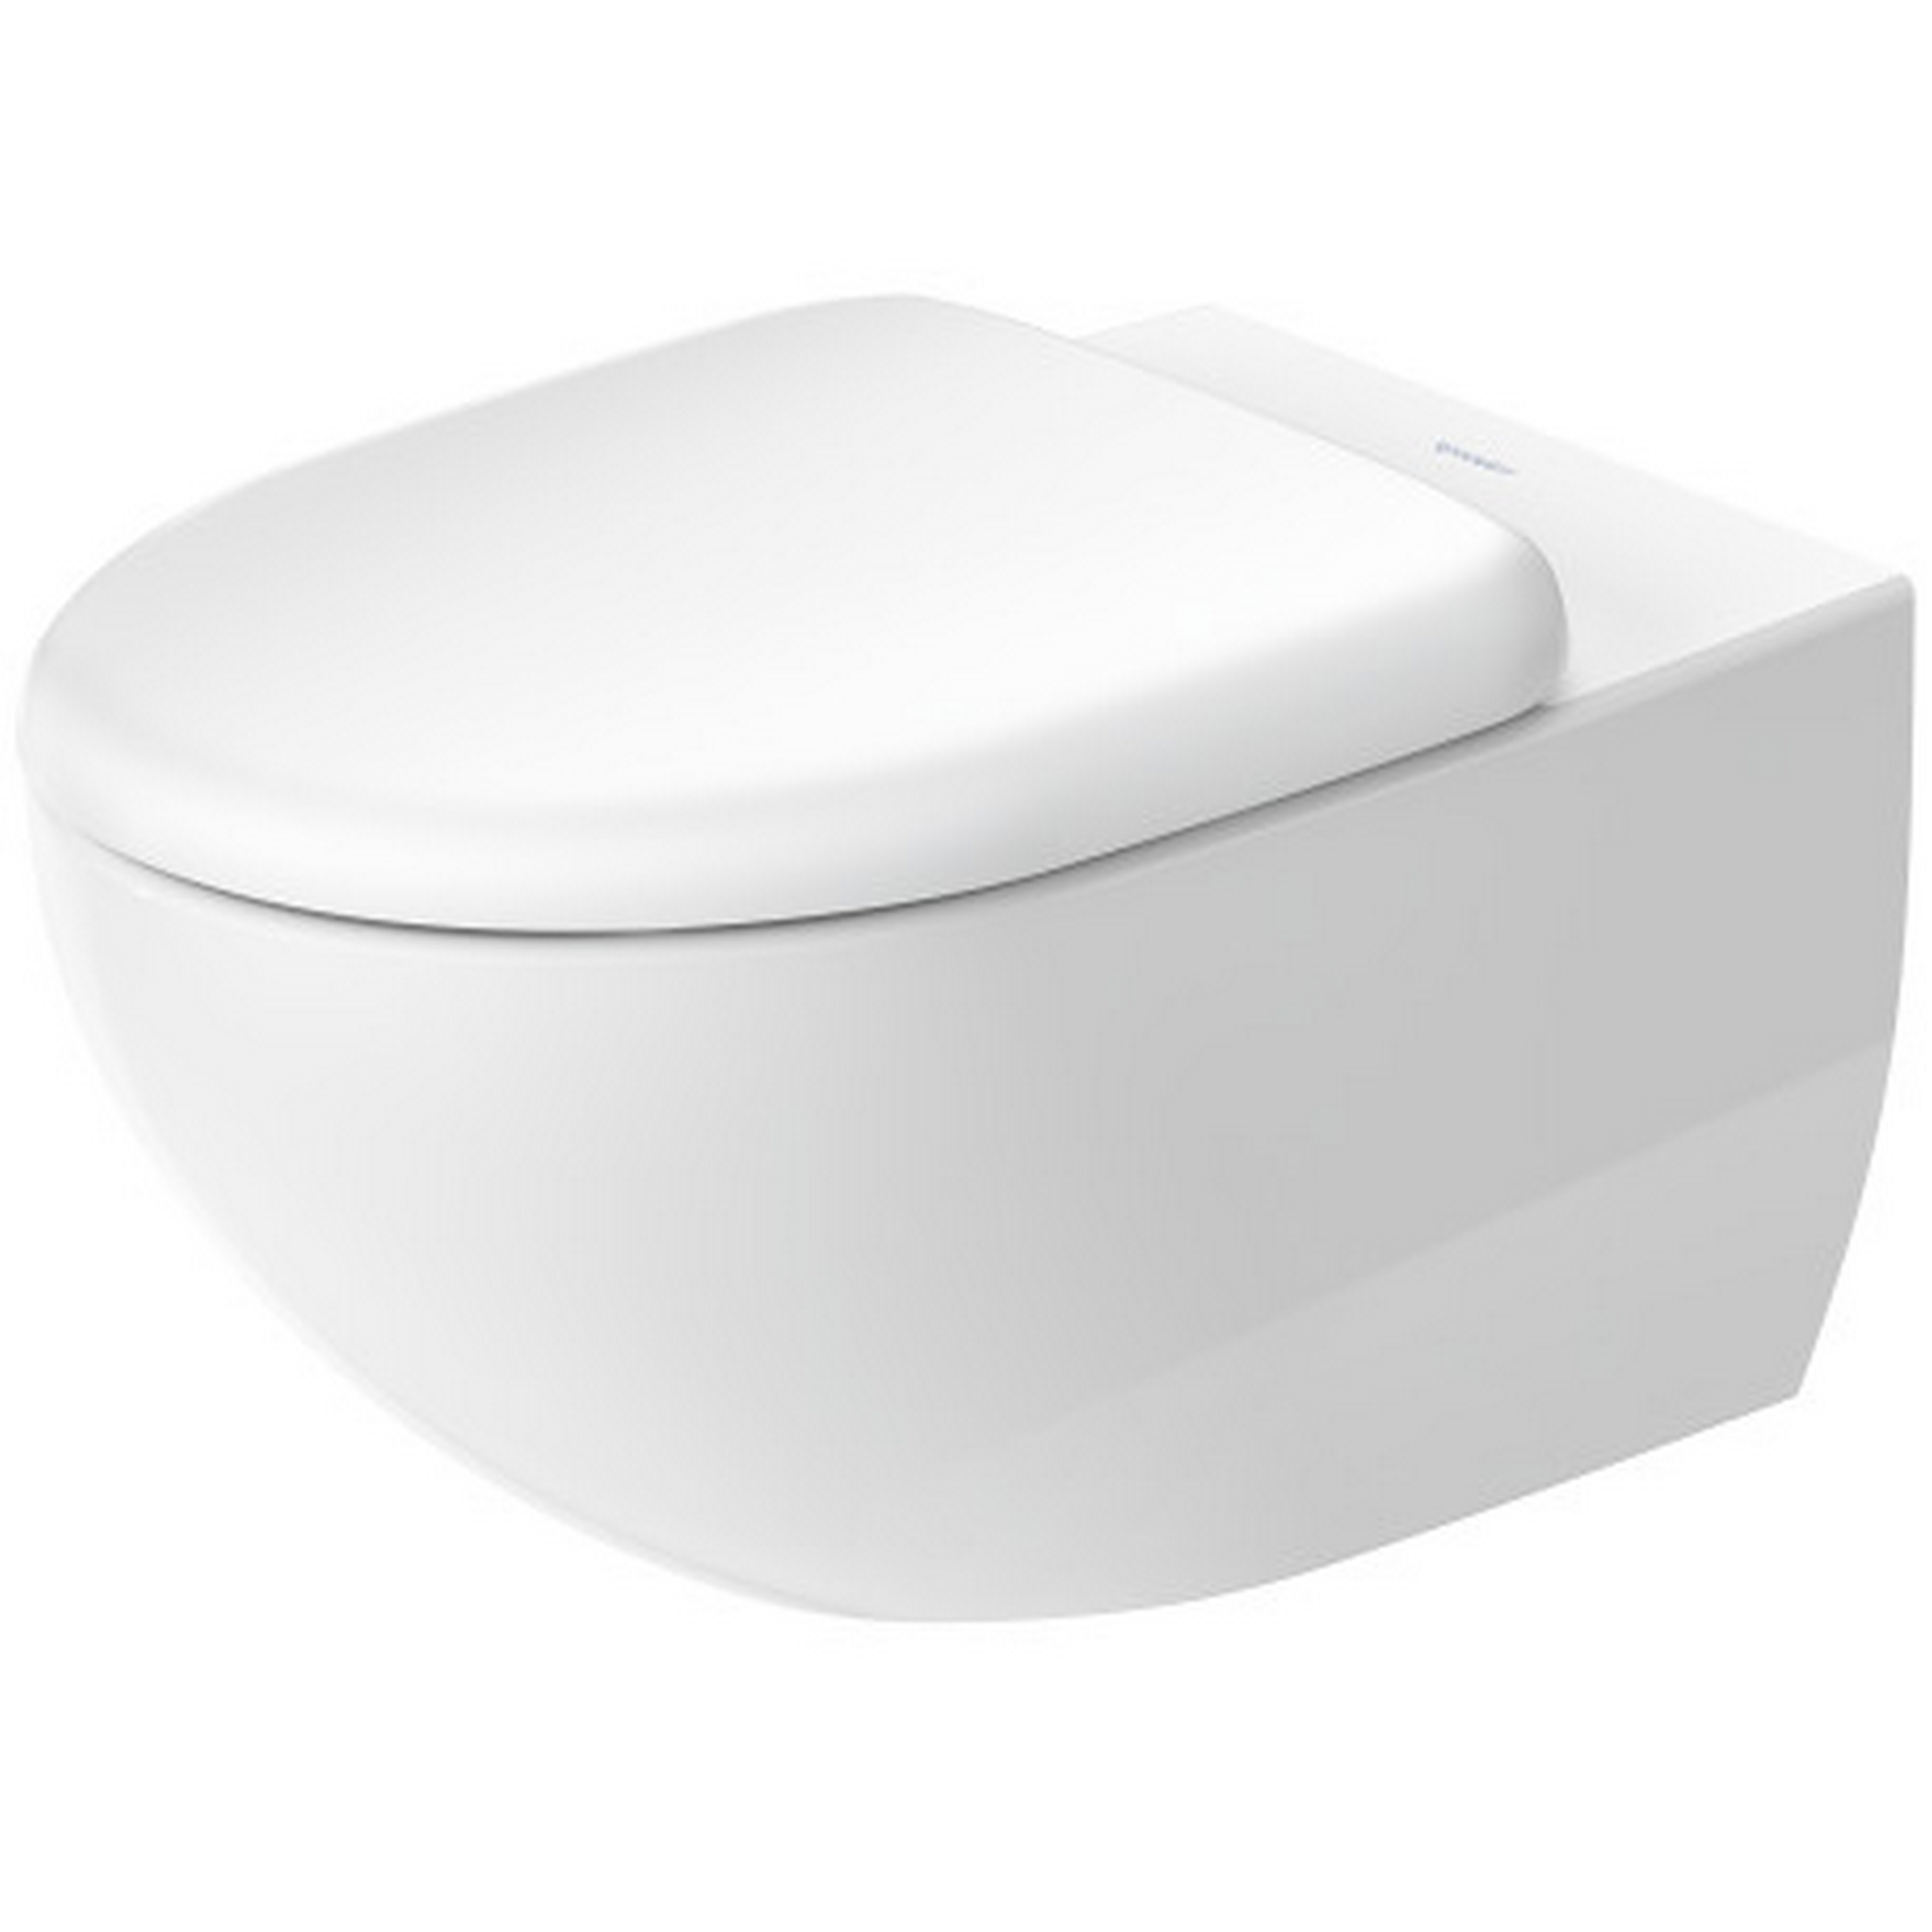 Wand-Tiefspül-WC 'Architec' mit WC-Sitz, spülrandlos, weiß + product picture